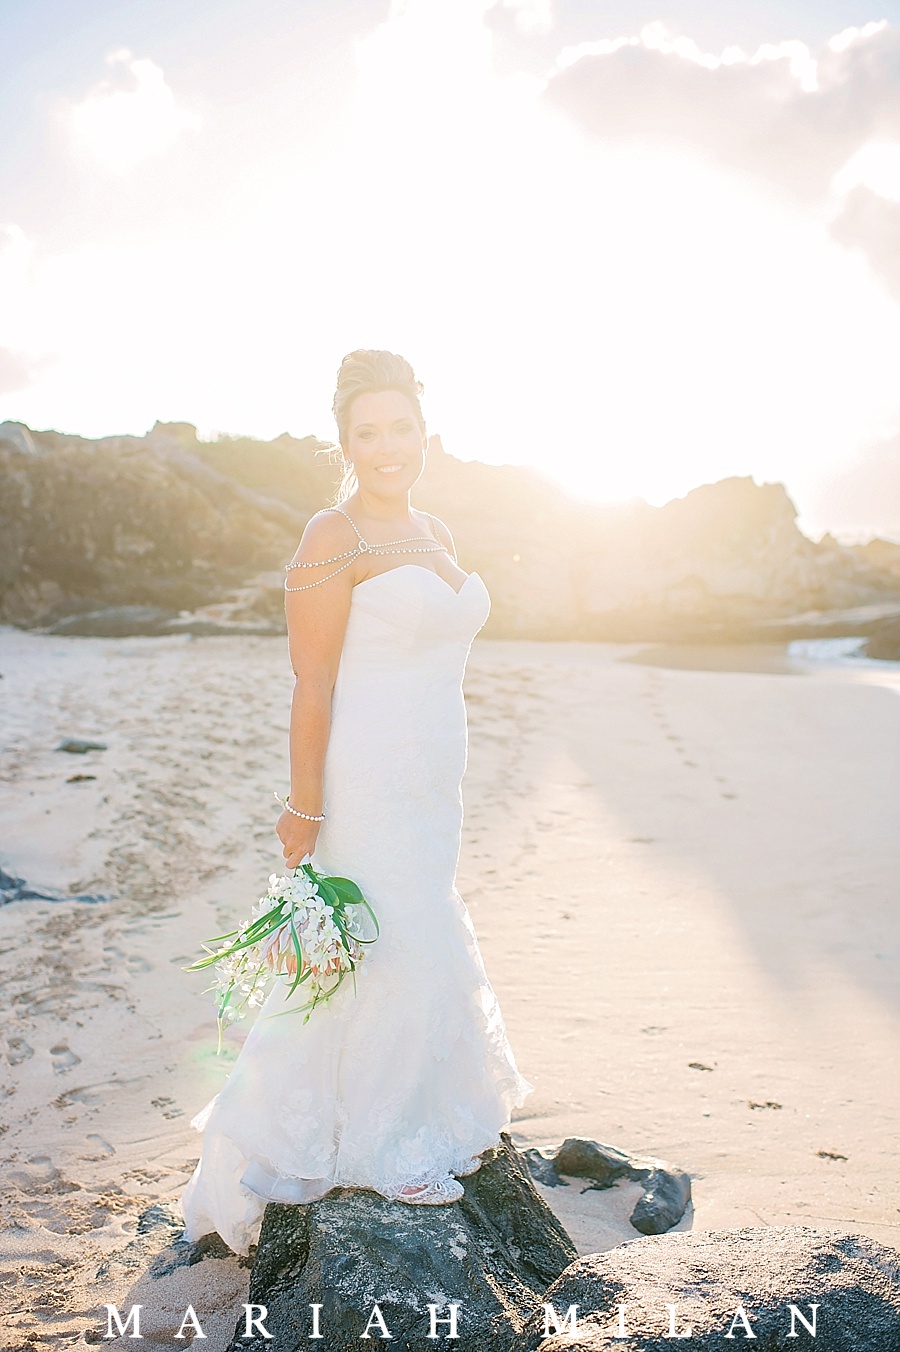 Maui Wedding Photography at Ironwood Beach by Mariah Milan